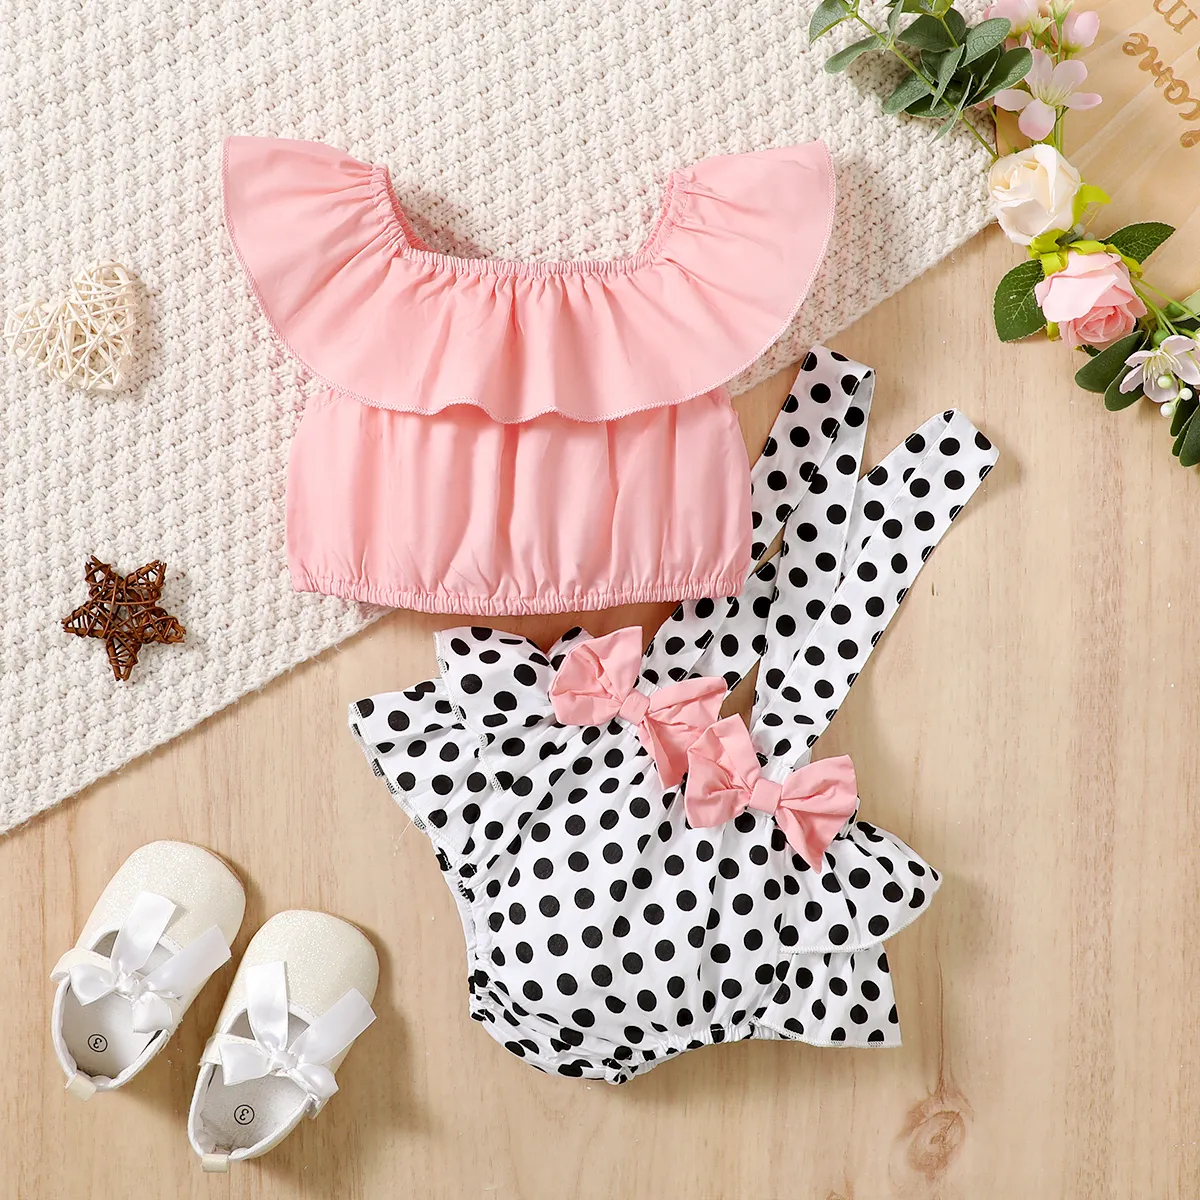 2pcs Baby Girl 100% Cotton Bow Decor Ruffled Solid Sleeveless Top and 100% Cotton Polka Dots Print Ruffled Suspender Shorts Set  big image 1